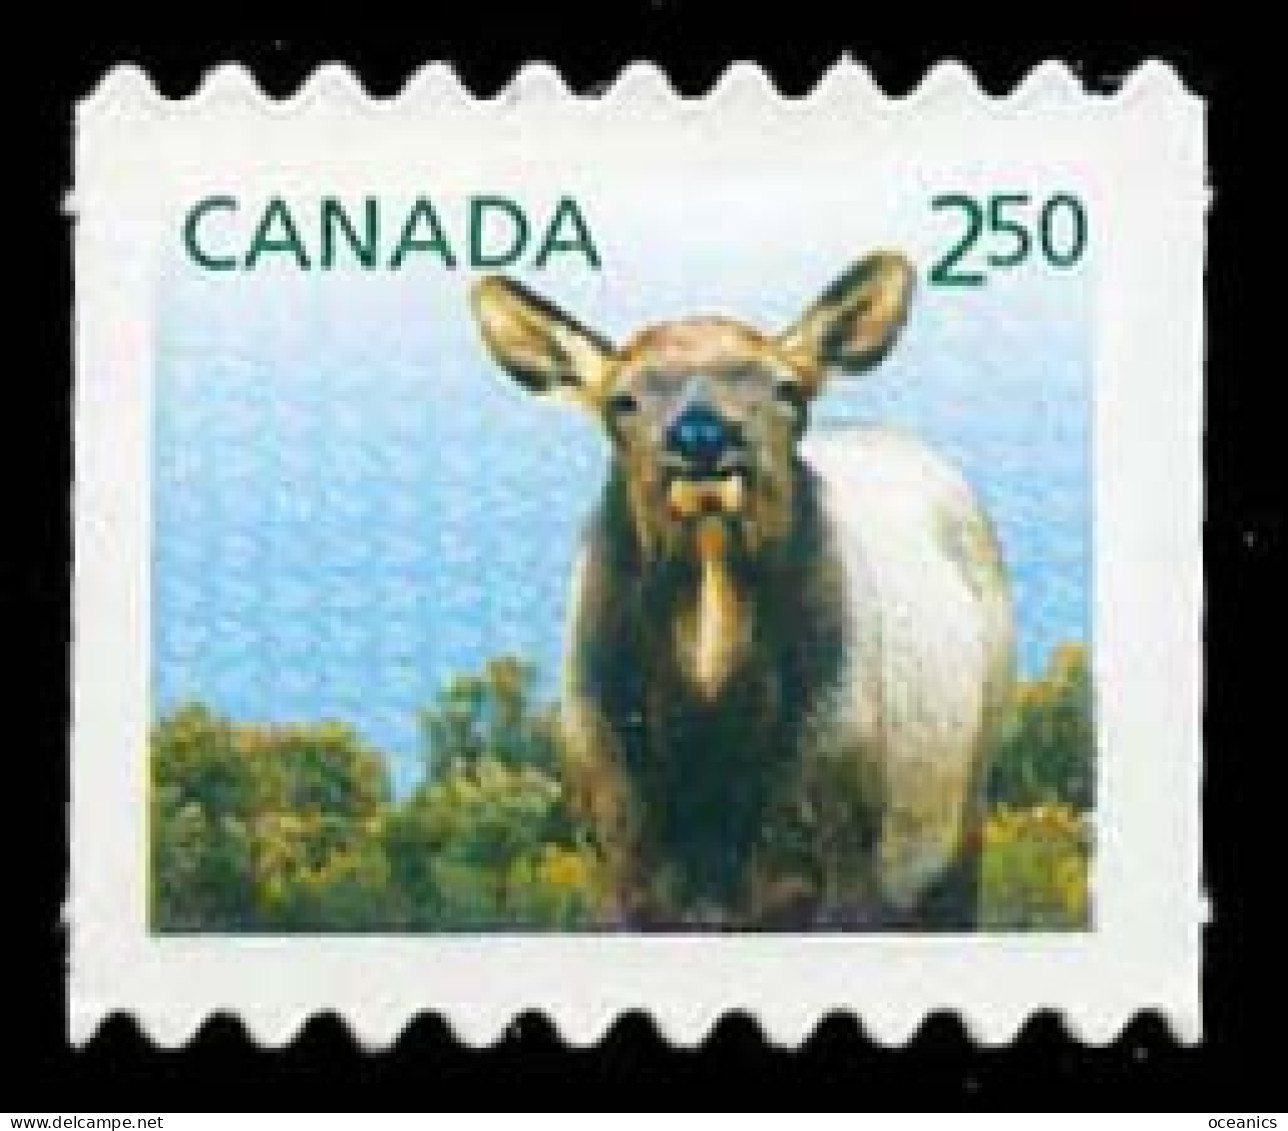 Canada (Scott No.2717 - Faune Et Leurs Bébés / Wild Animal's Babies 2014) (o) De Carnet / From Booklet - Oblitérés